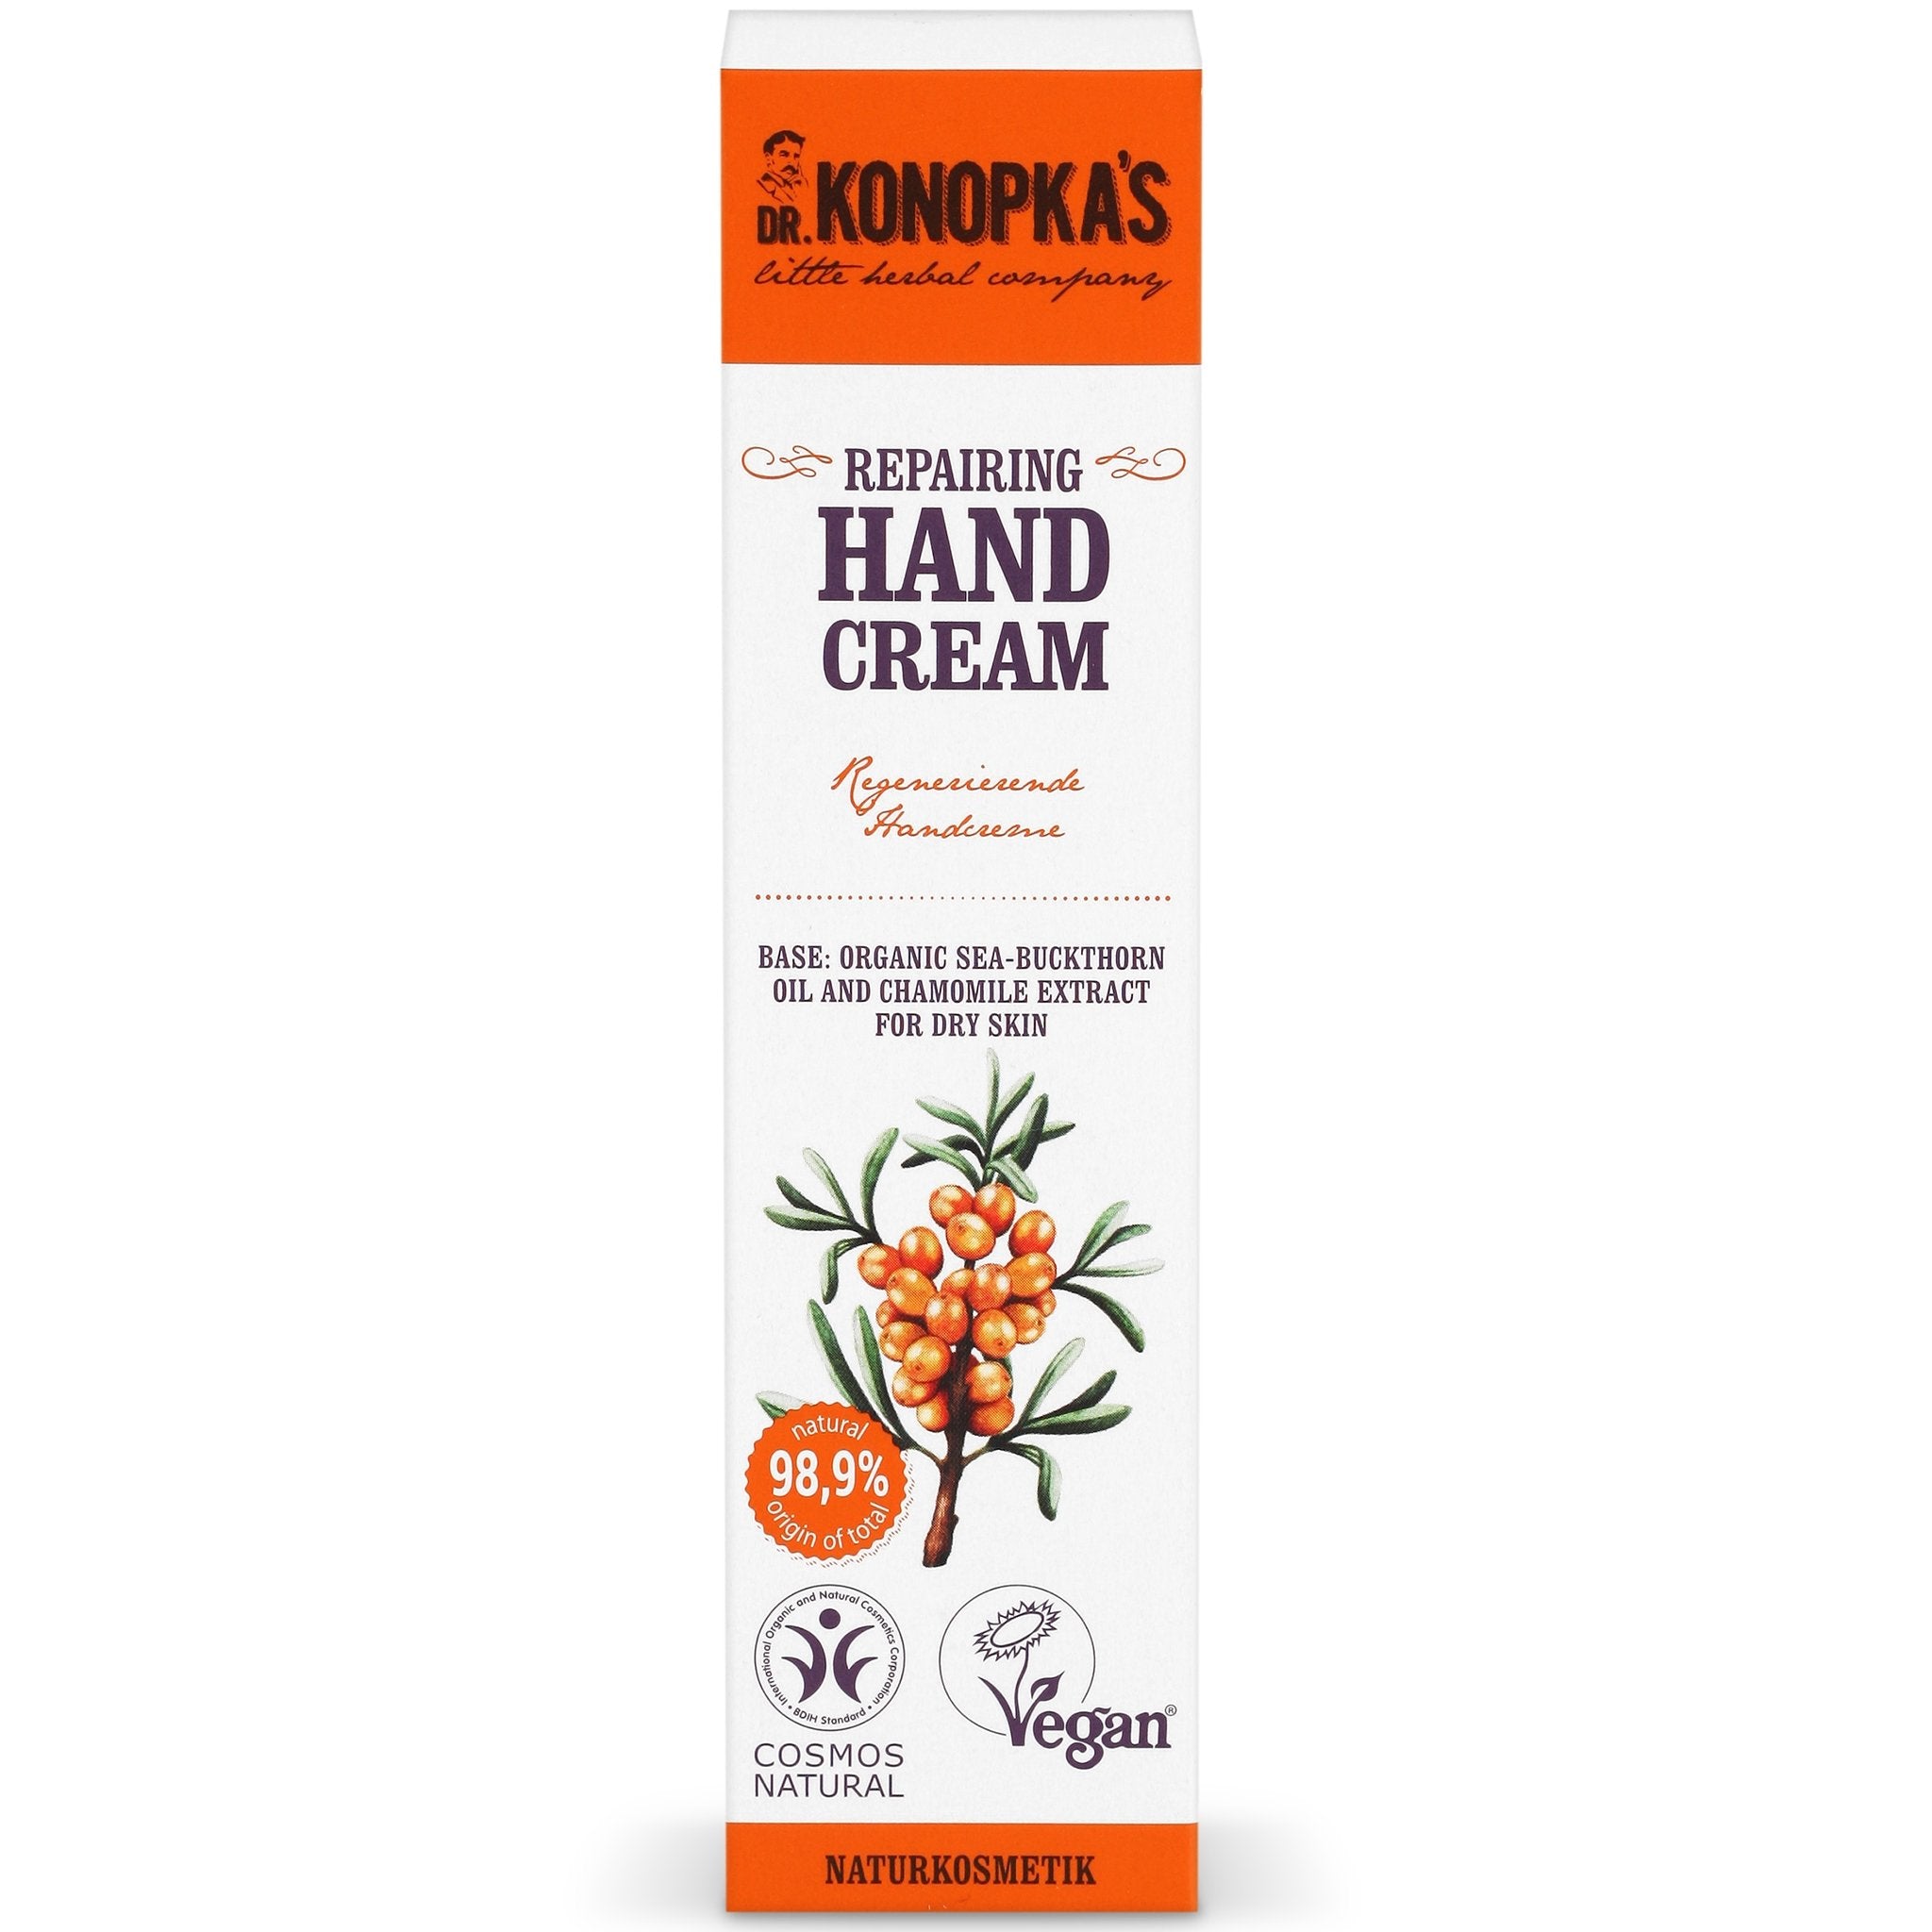 Repairing Hand Cream - mypure.co.uk